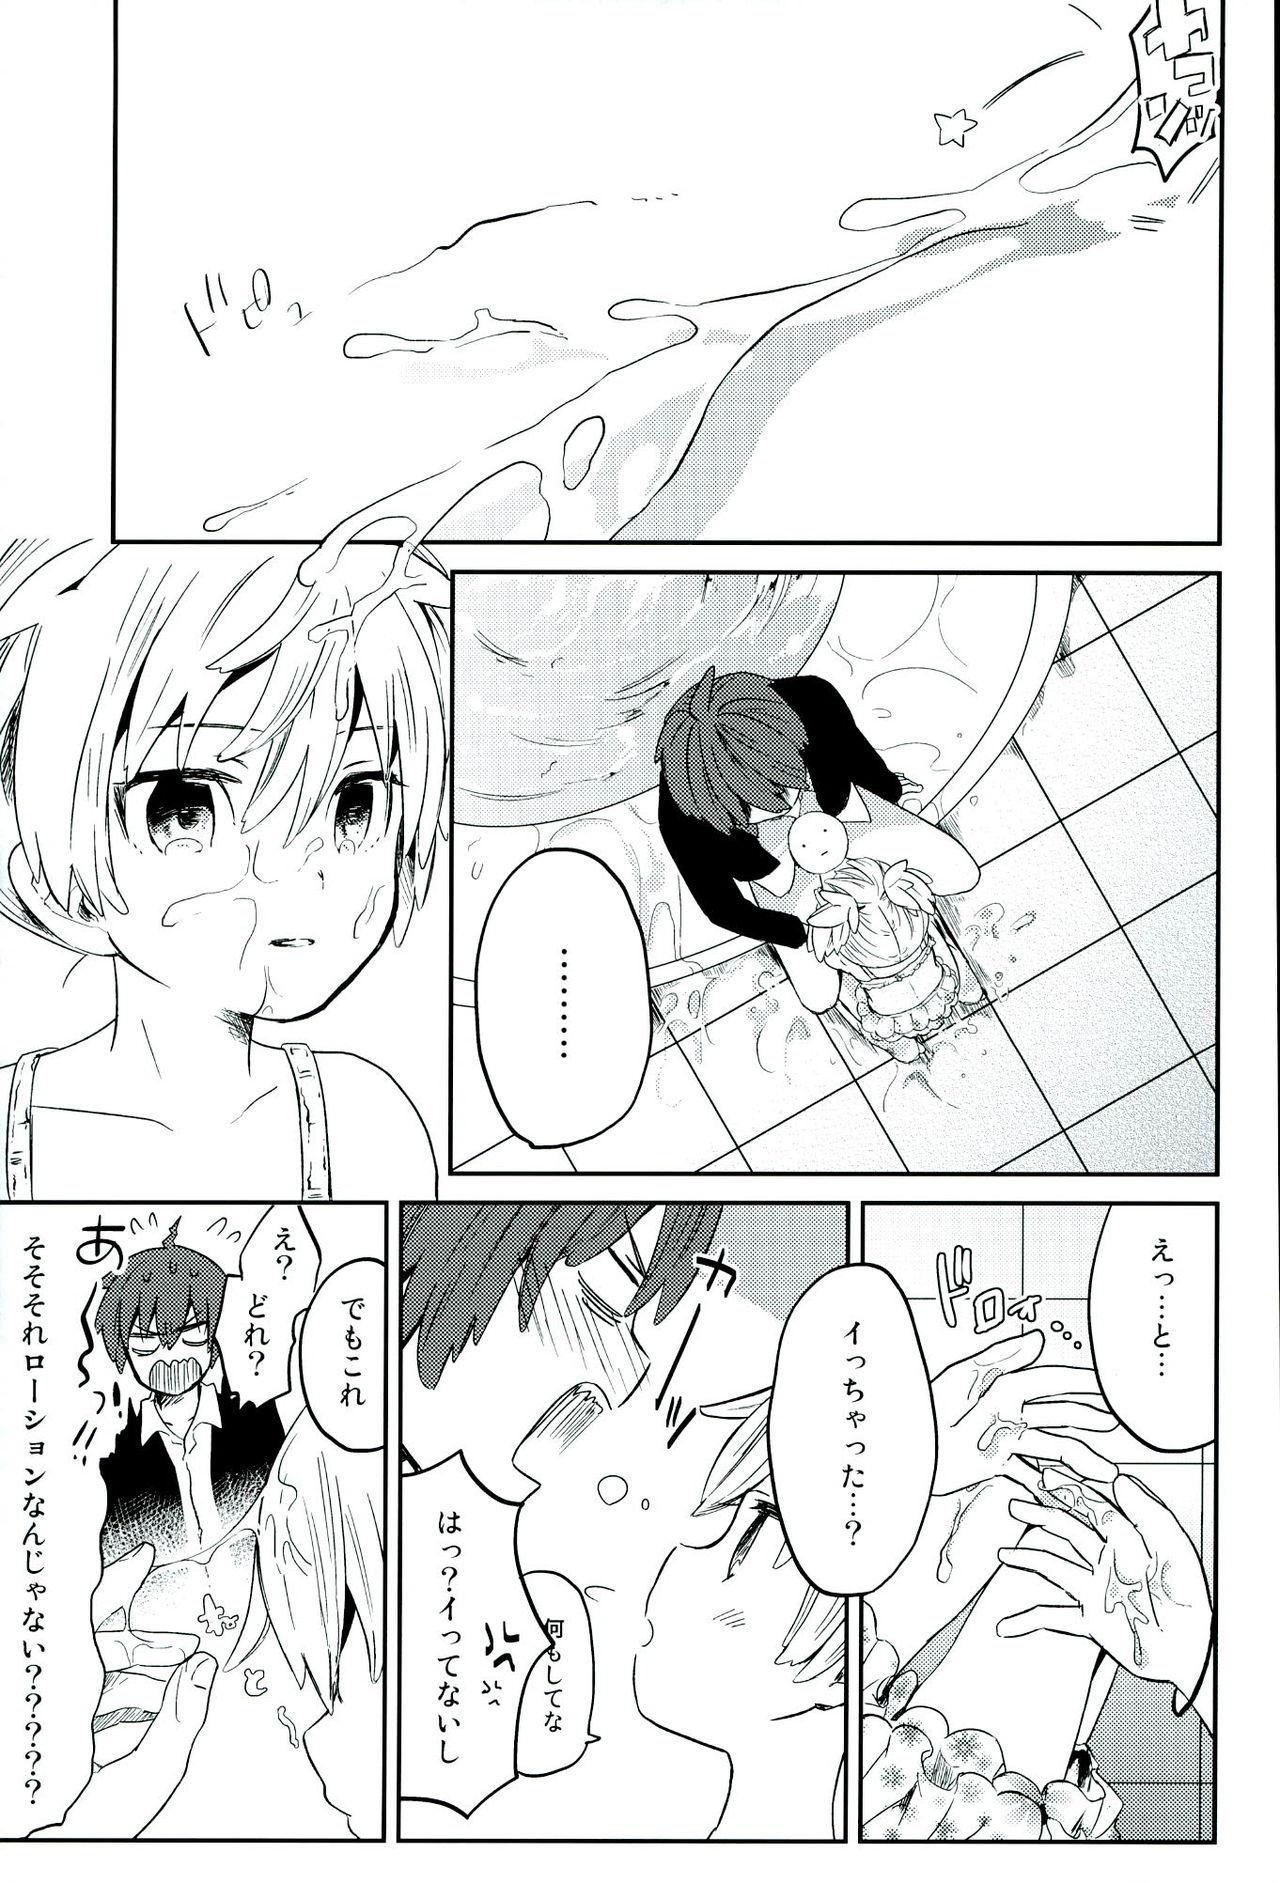 Swing Chuu 2 Han wa 3 Kosuri Han!? - Ansatsu kyoushitsu Monster Dick - Page 11